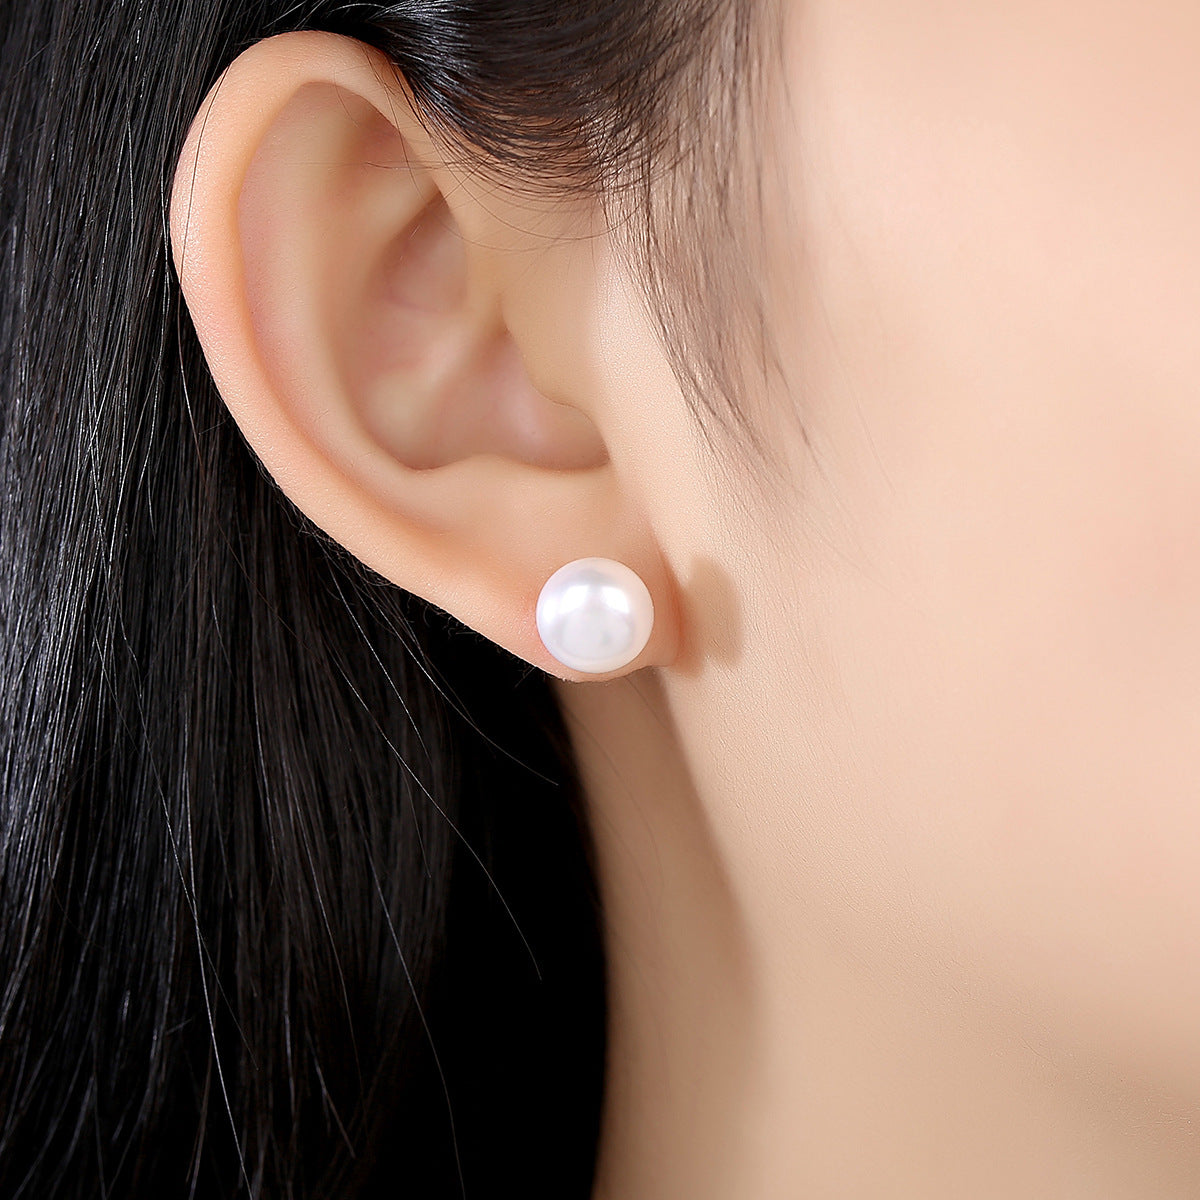 Single Pearl Earrings Studs